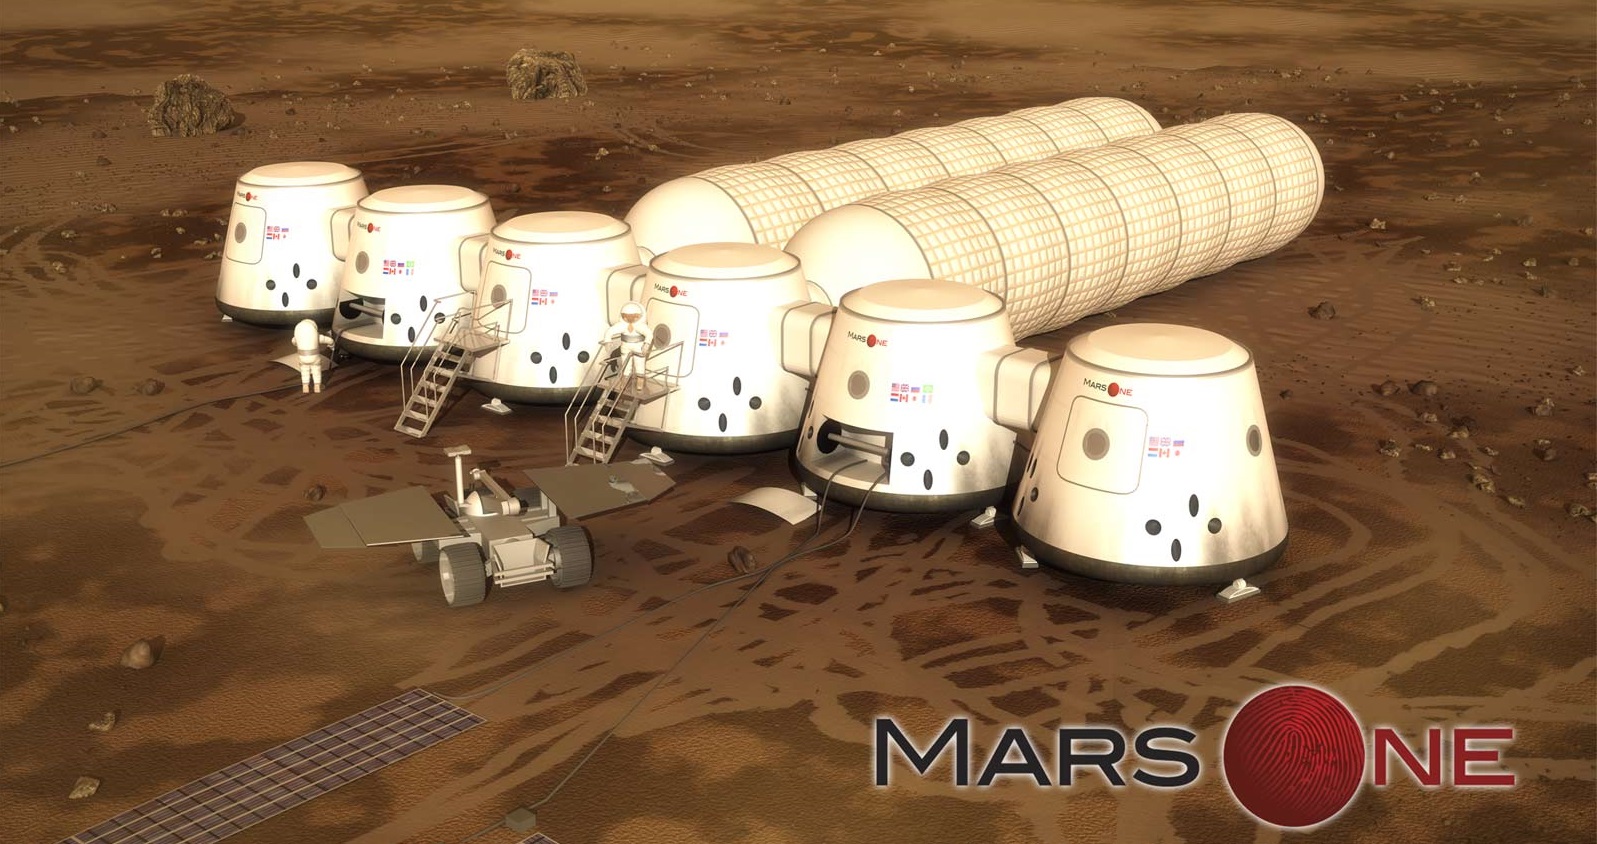 Цветущие сады на Марсе остаются мечтой: проект Mars One обанкротился - 1